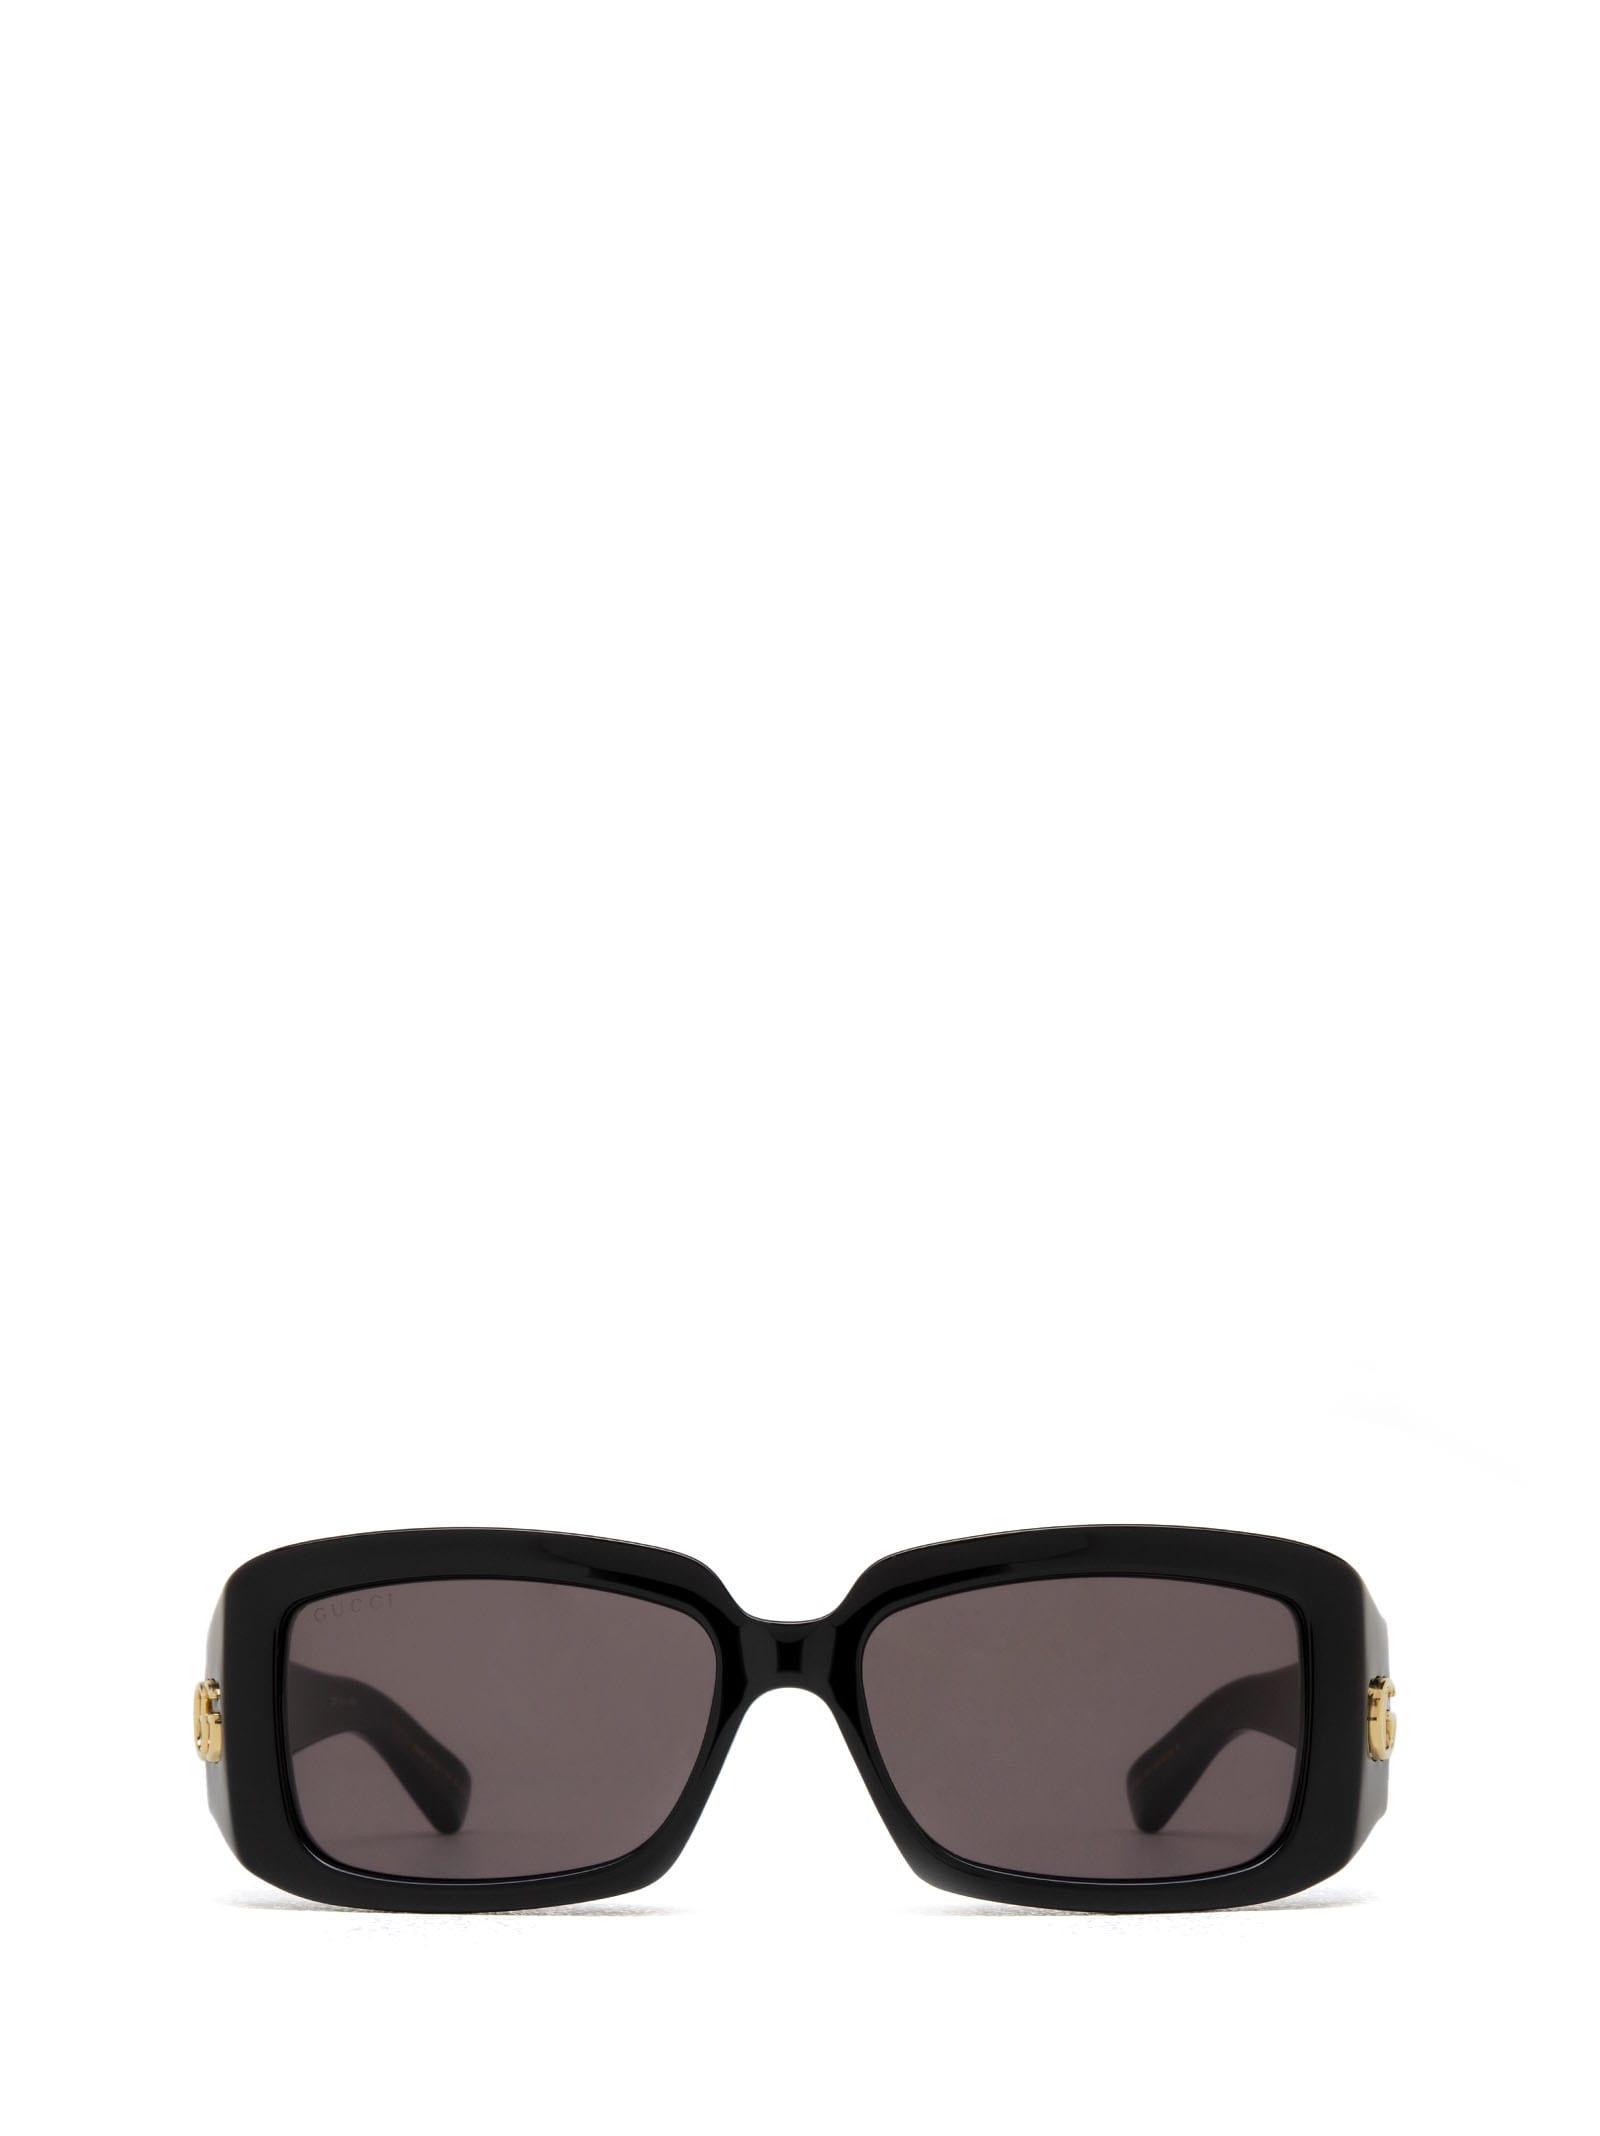 Gucci GG1403S Women Sunglasses - Black